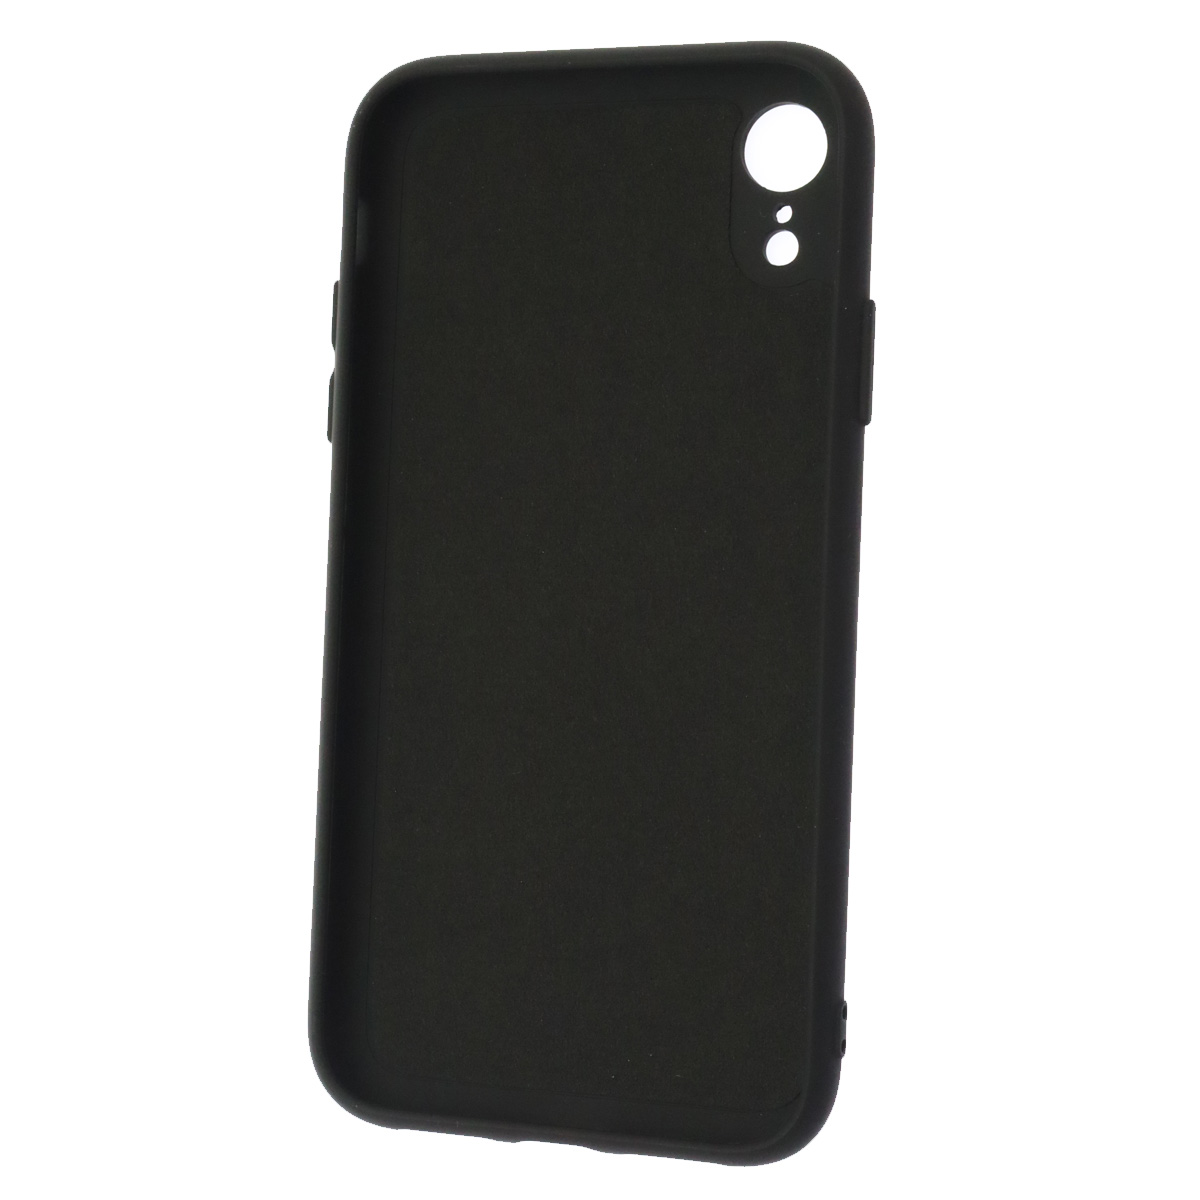 Чехол накладка NANO для APPLE iPhone XR, защита камеры, силикон, бархат, цвет черный